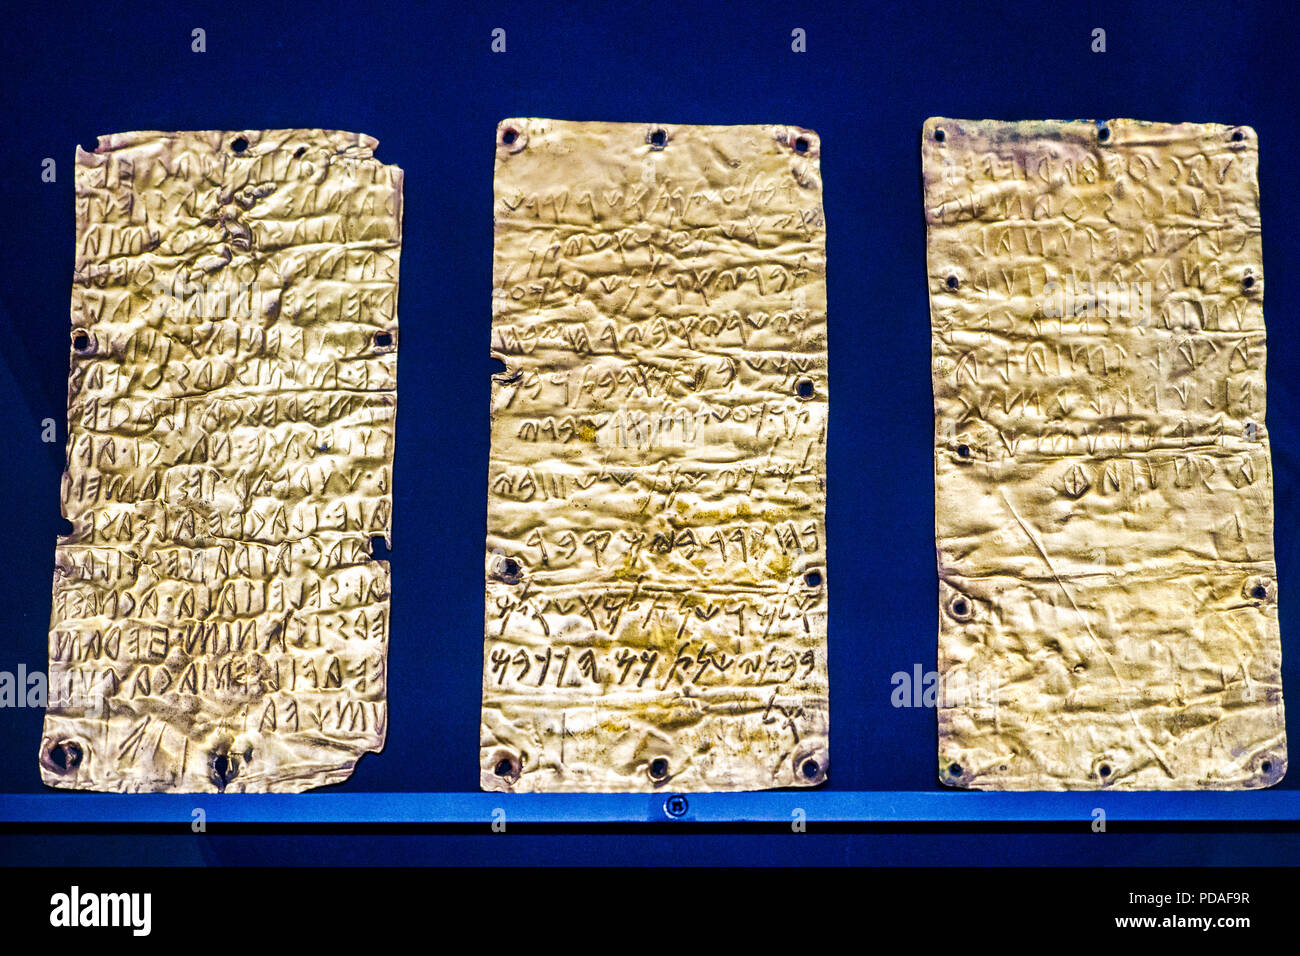 Questi fogli di oro risalgono alla fine del VI secolo a.c. e le iscrizioni sono la più antica fonte storica di pre-romano, Italia. Due dei fogli di oro sono in lingua etrusca mentre il terzo è in fenicio - Museo Nazionale Etrusco di Villa Giulia - Roma, Italia Foto Stock